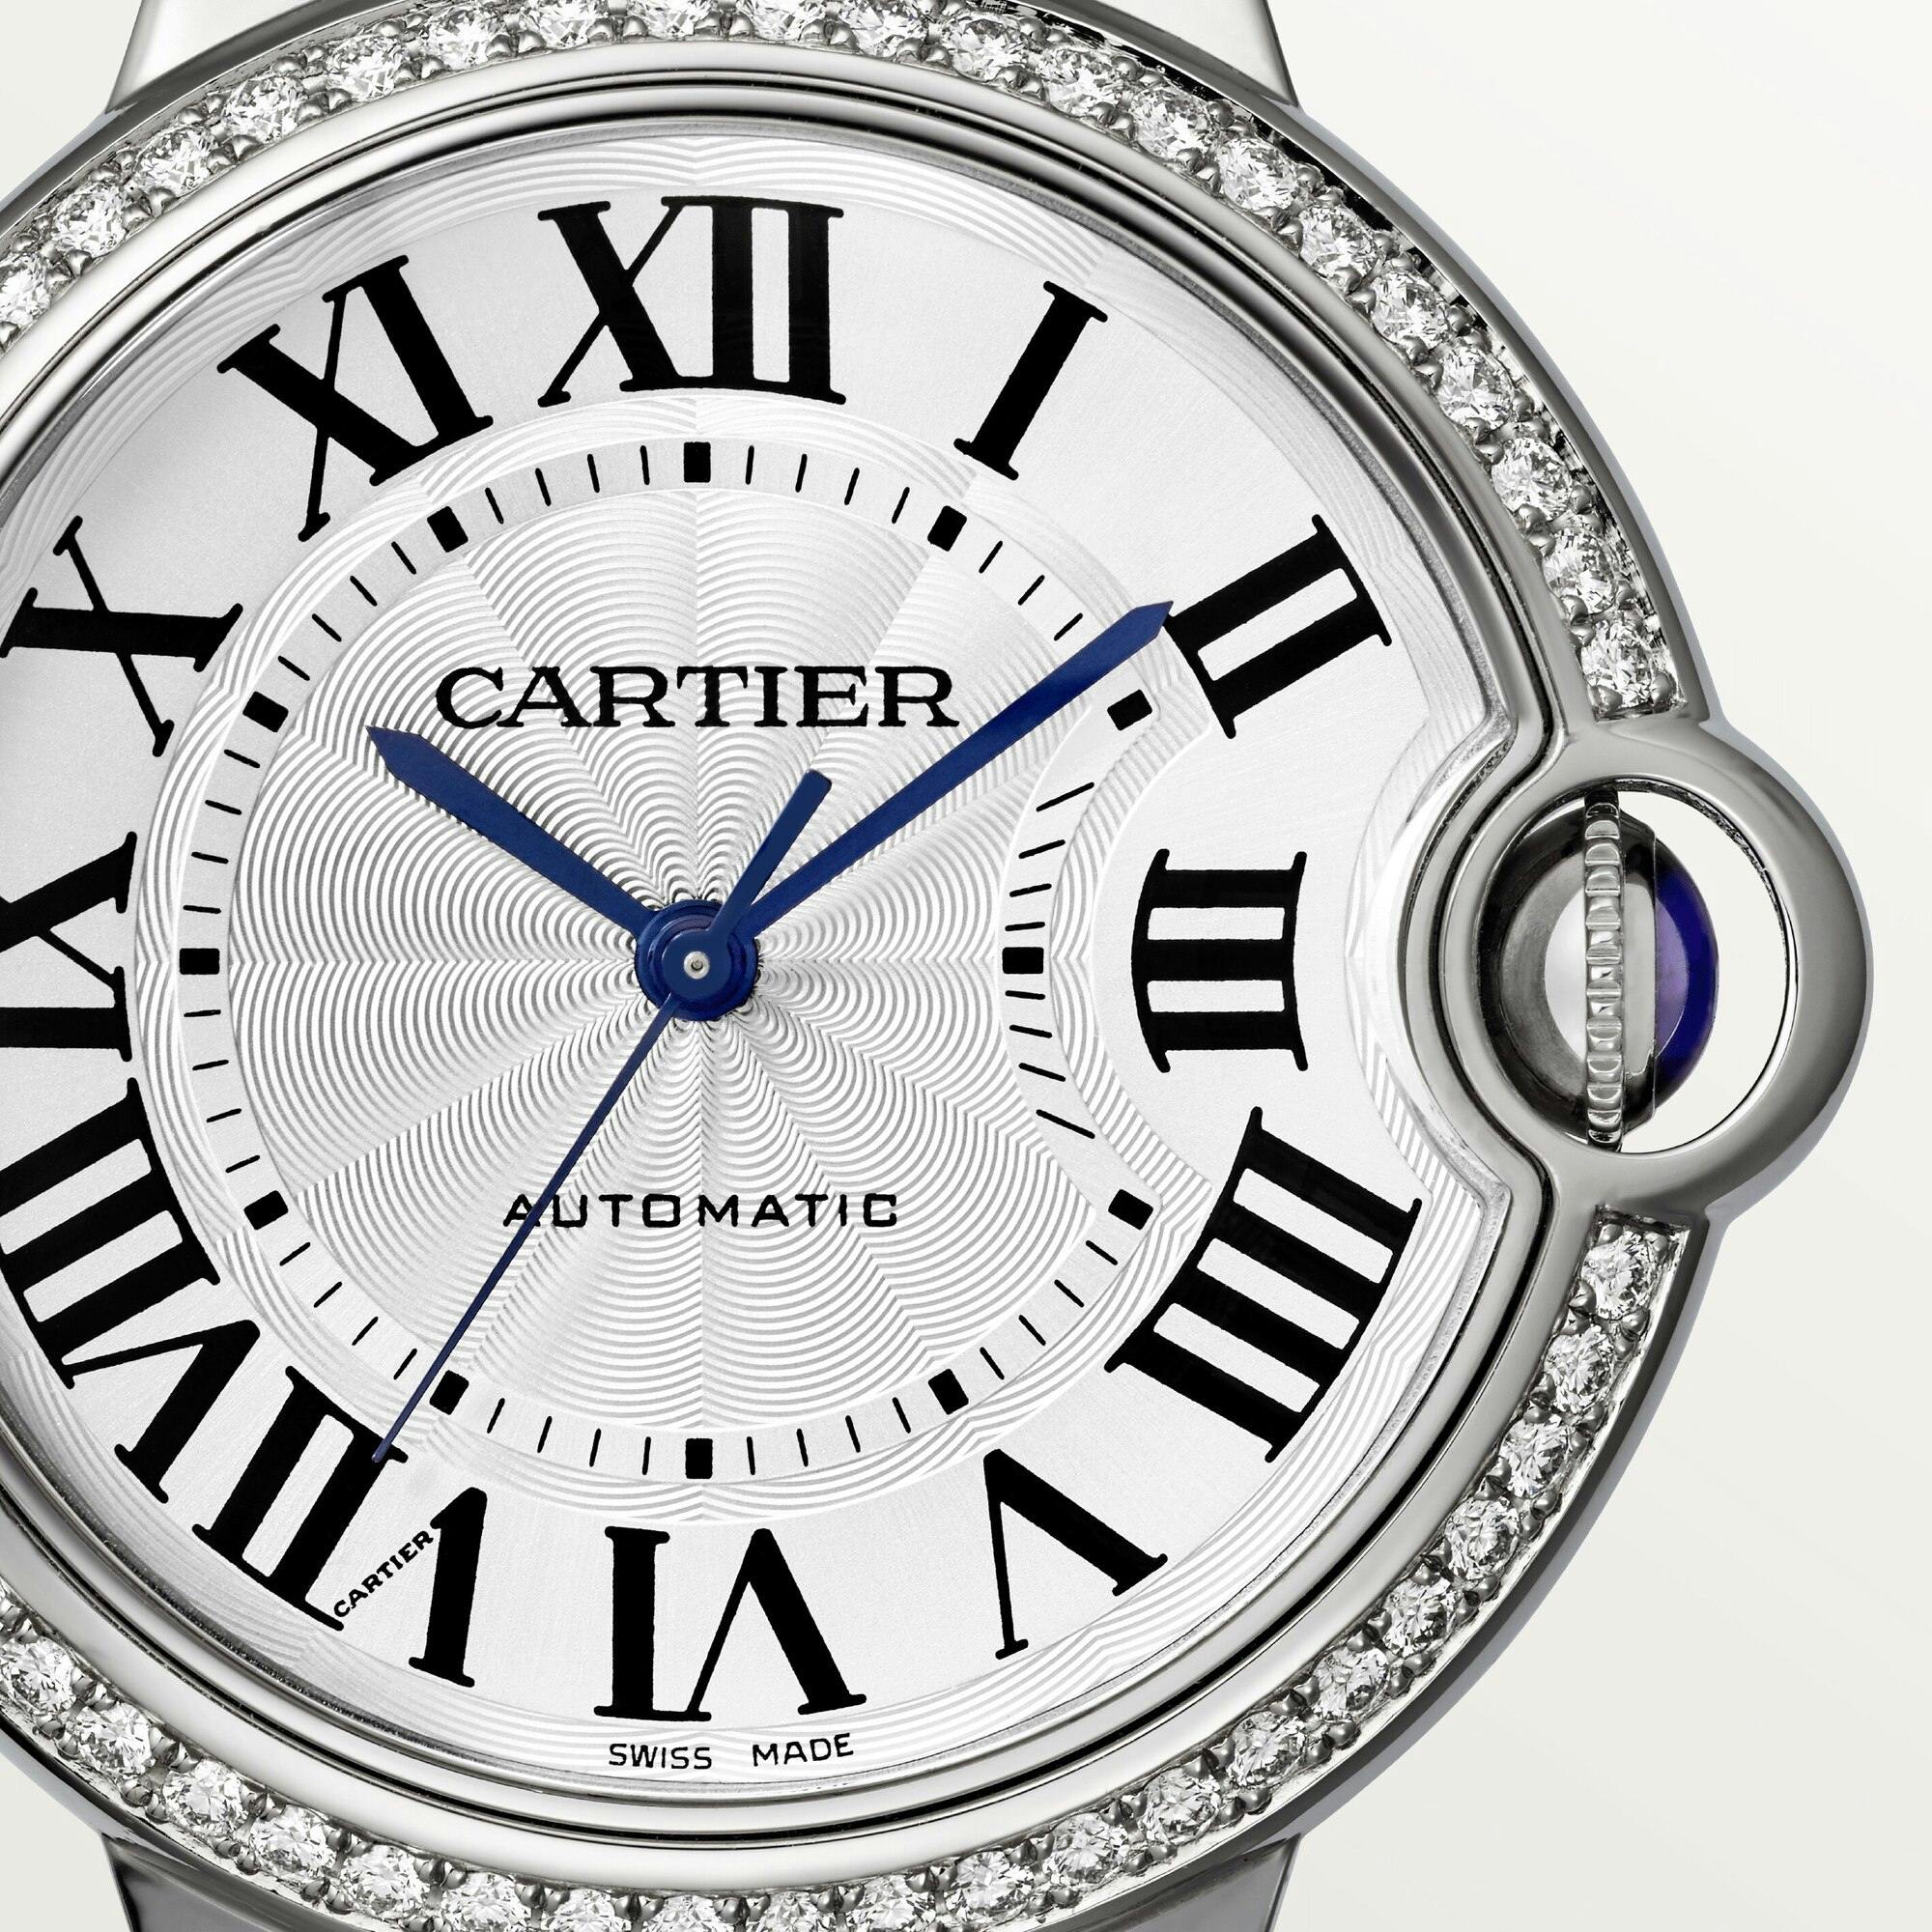 Ballon Bleu de Cartier Watch with Diamonds, 36mm 3